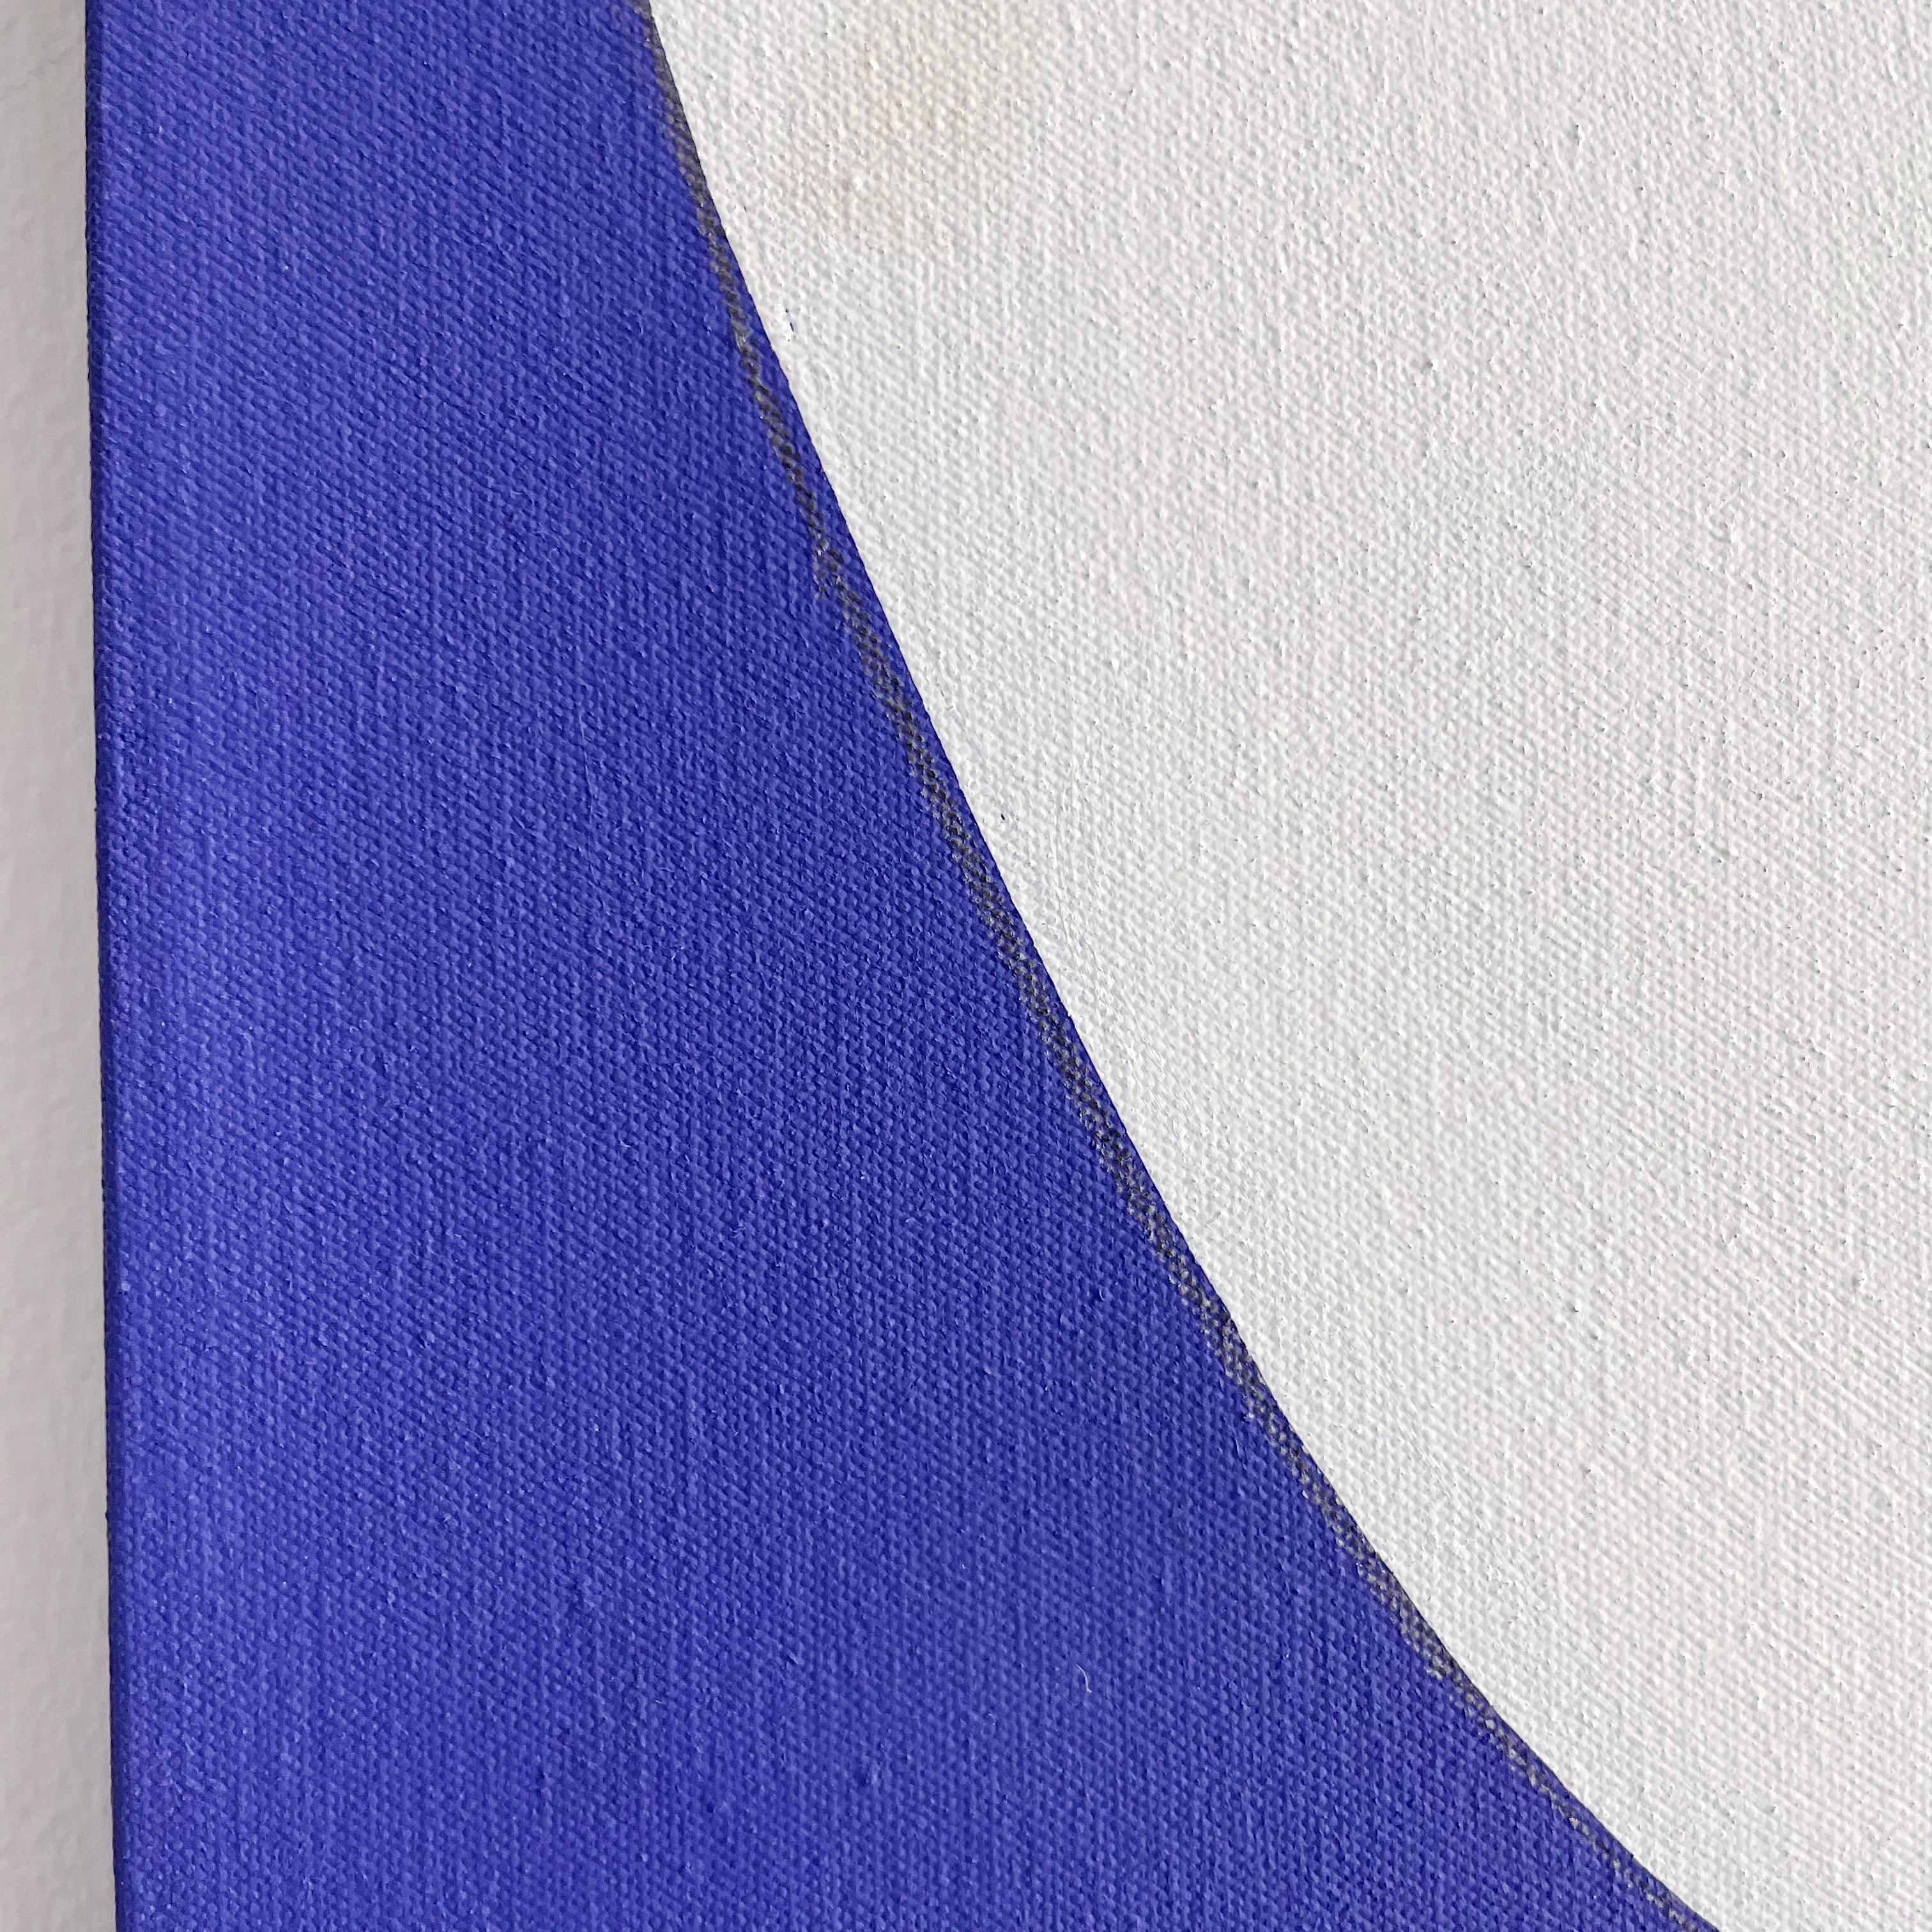 Mark Humphrey Original Blaue und weiße Kreise Acryl auf Leinwand (Nordamerikanisch)